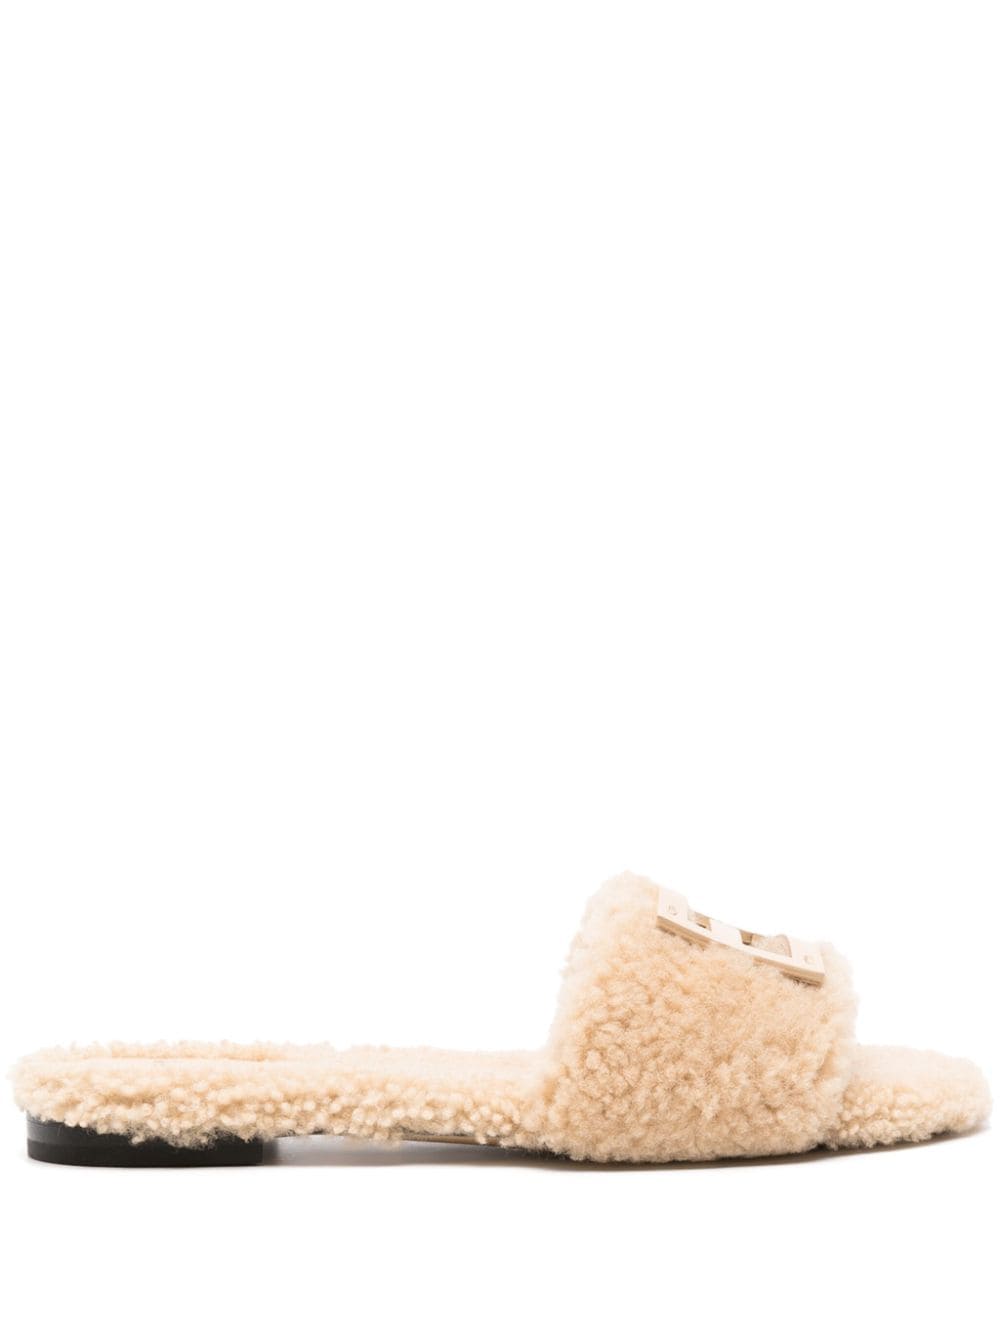 Fendi Baguette Sandals In Gris